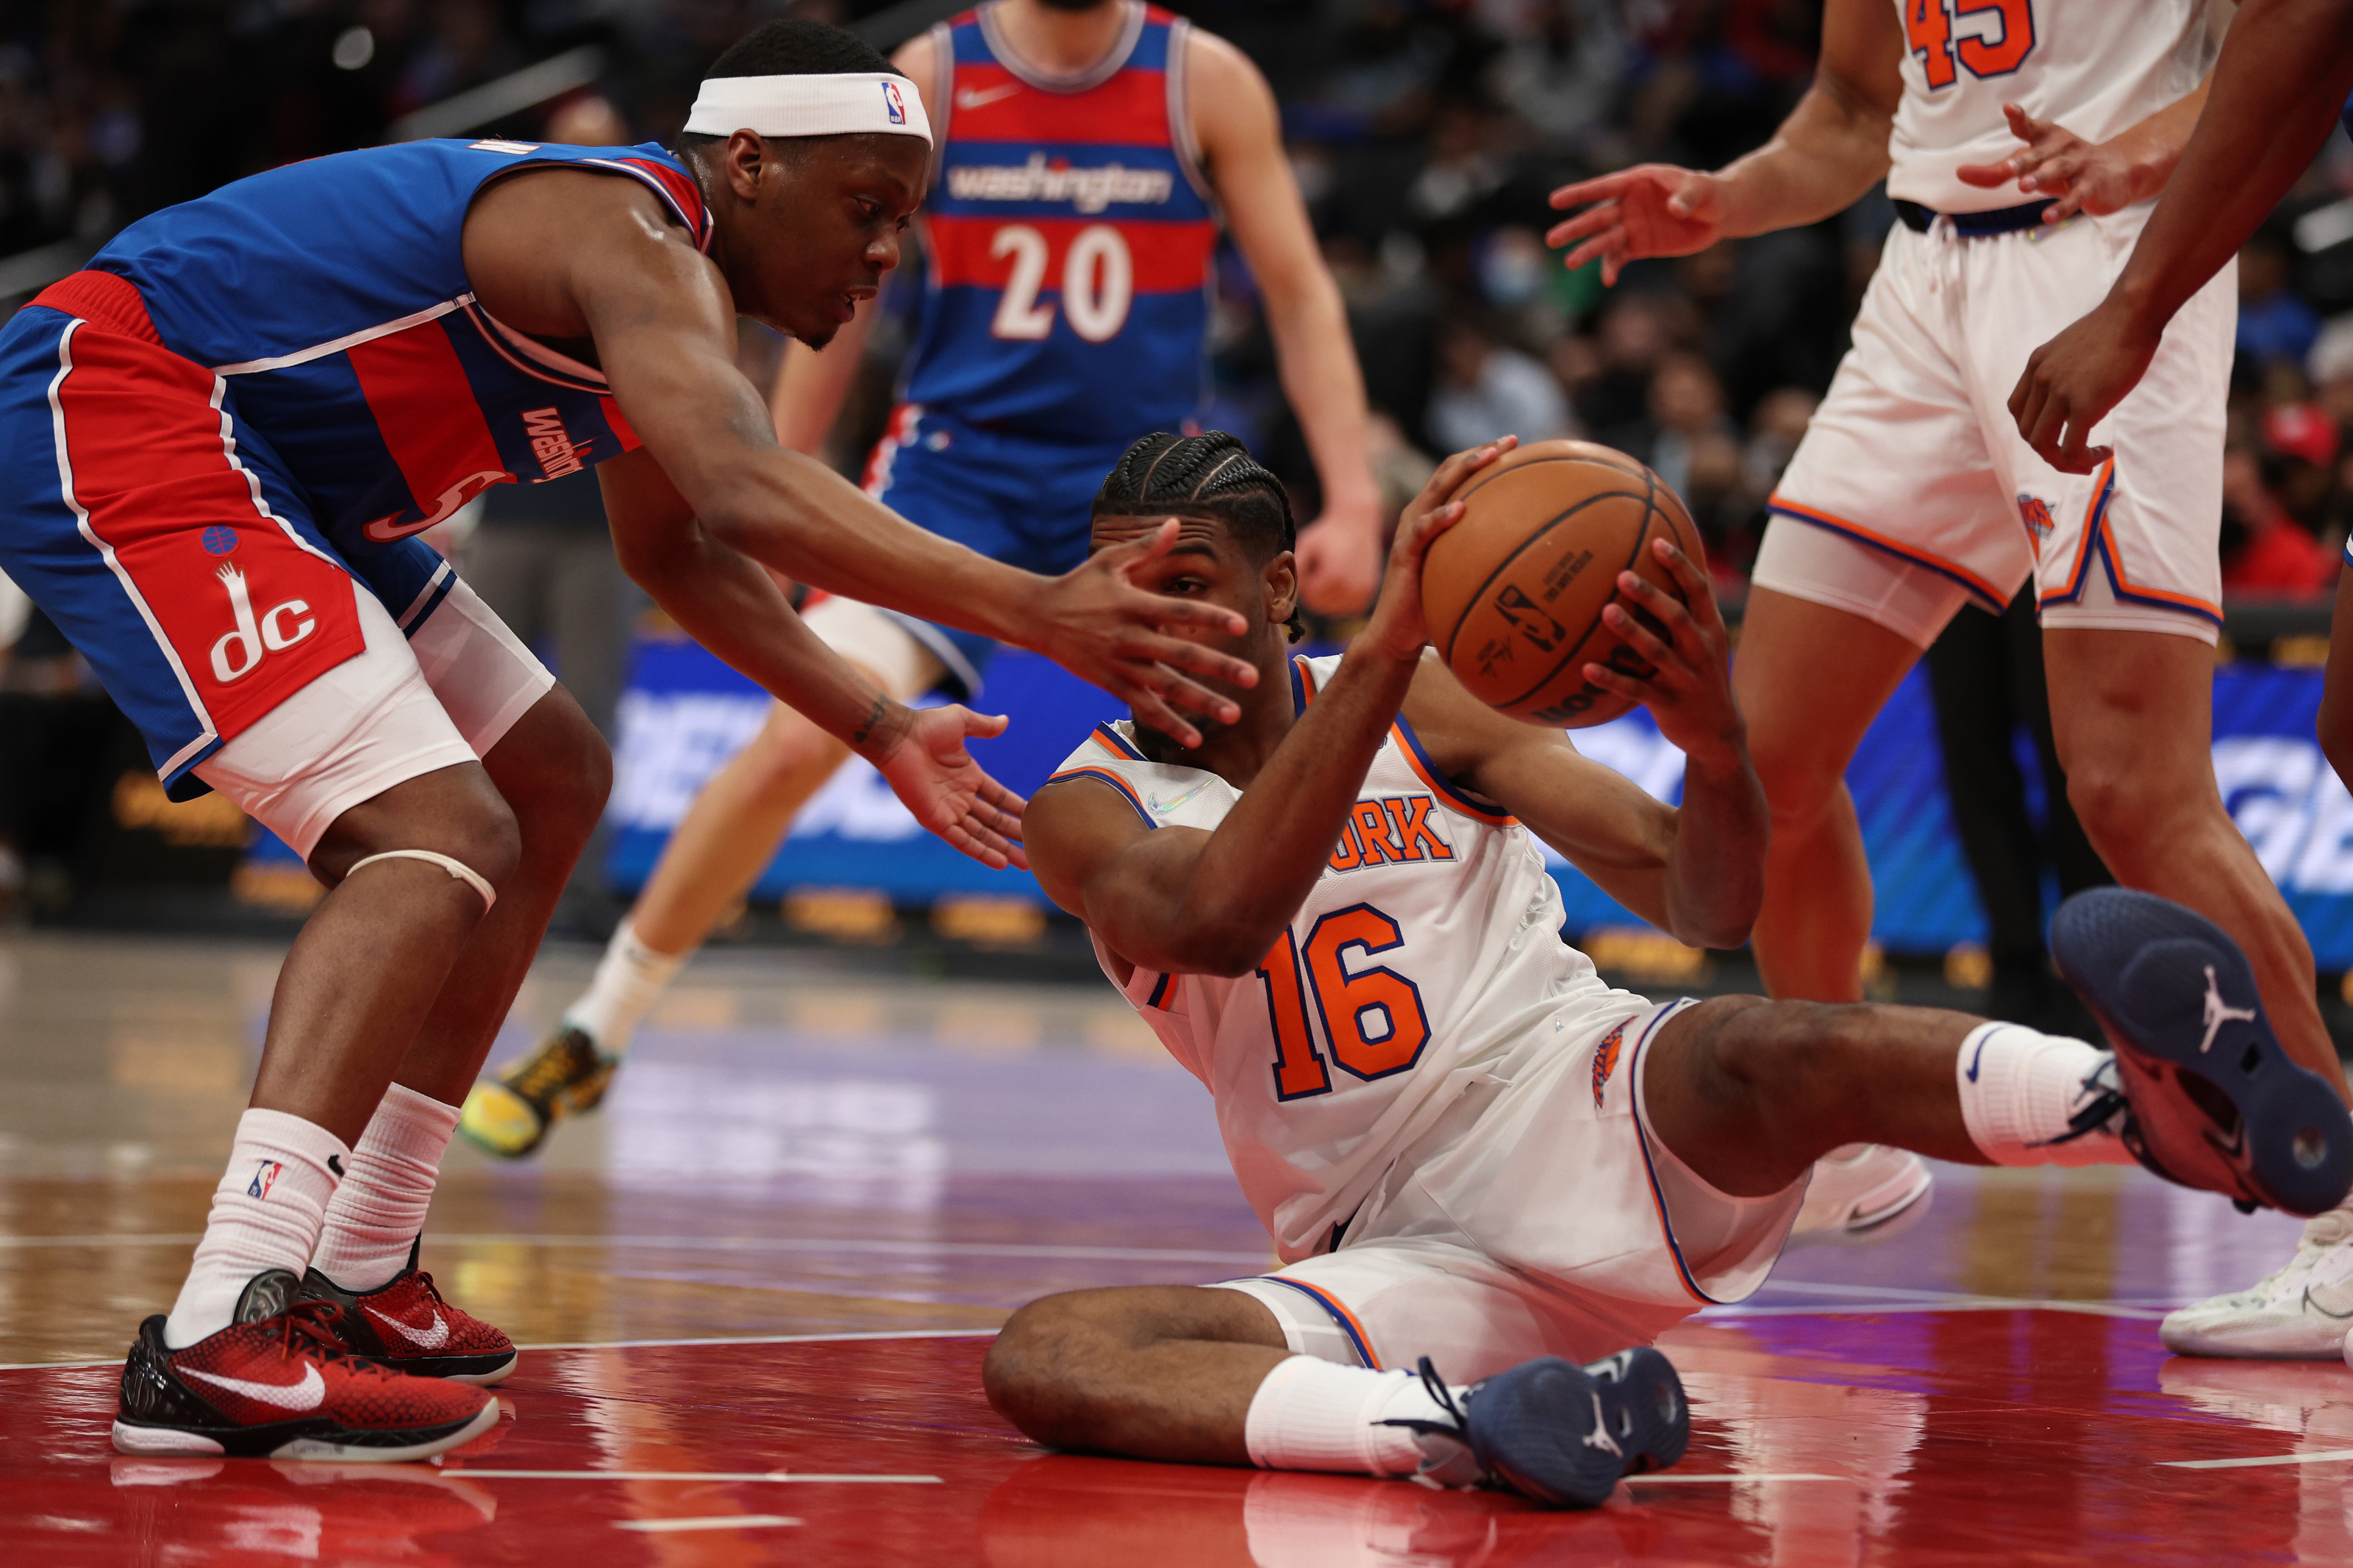 Meet the Knicks' Summer human highlight Feron Hunt